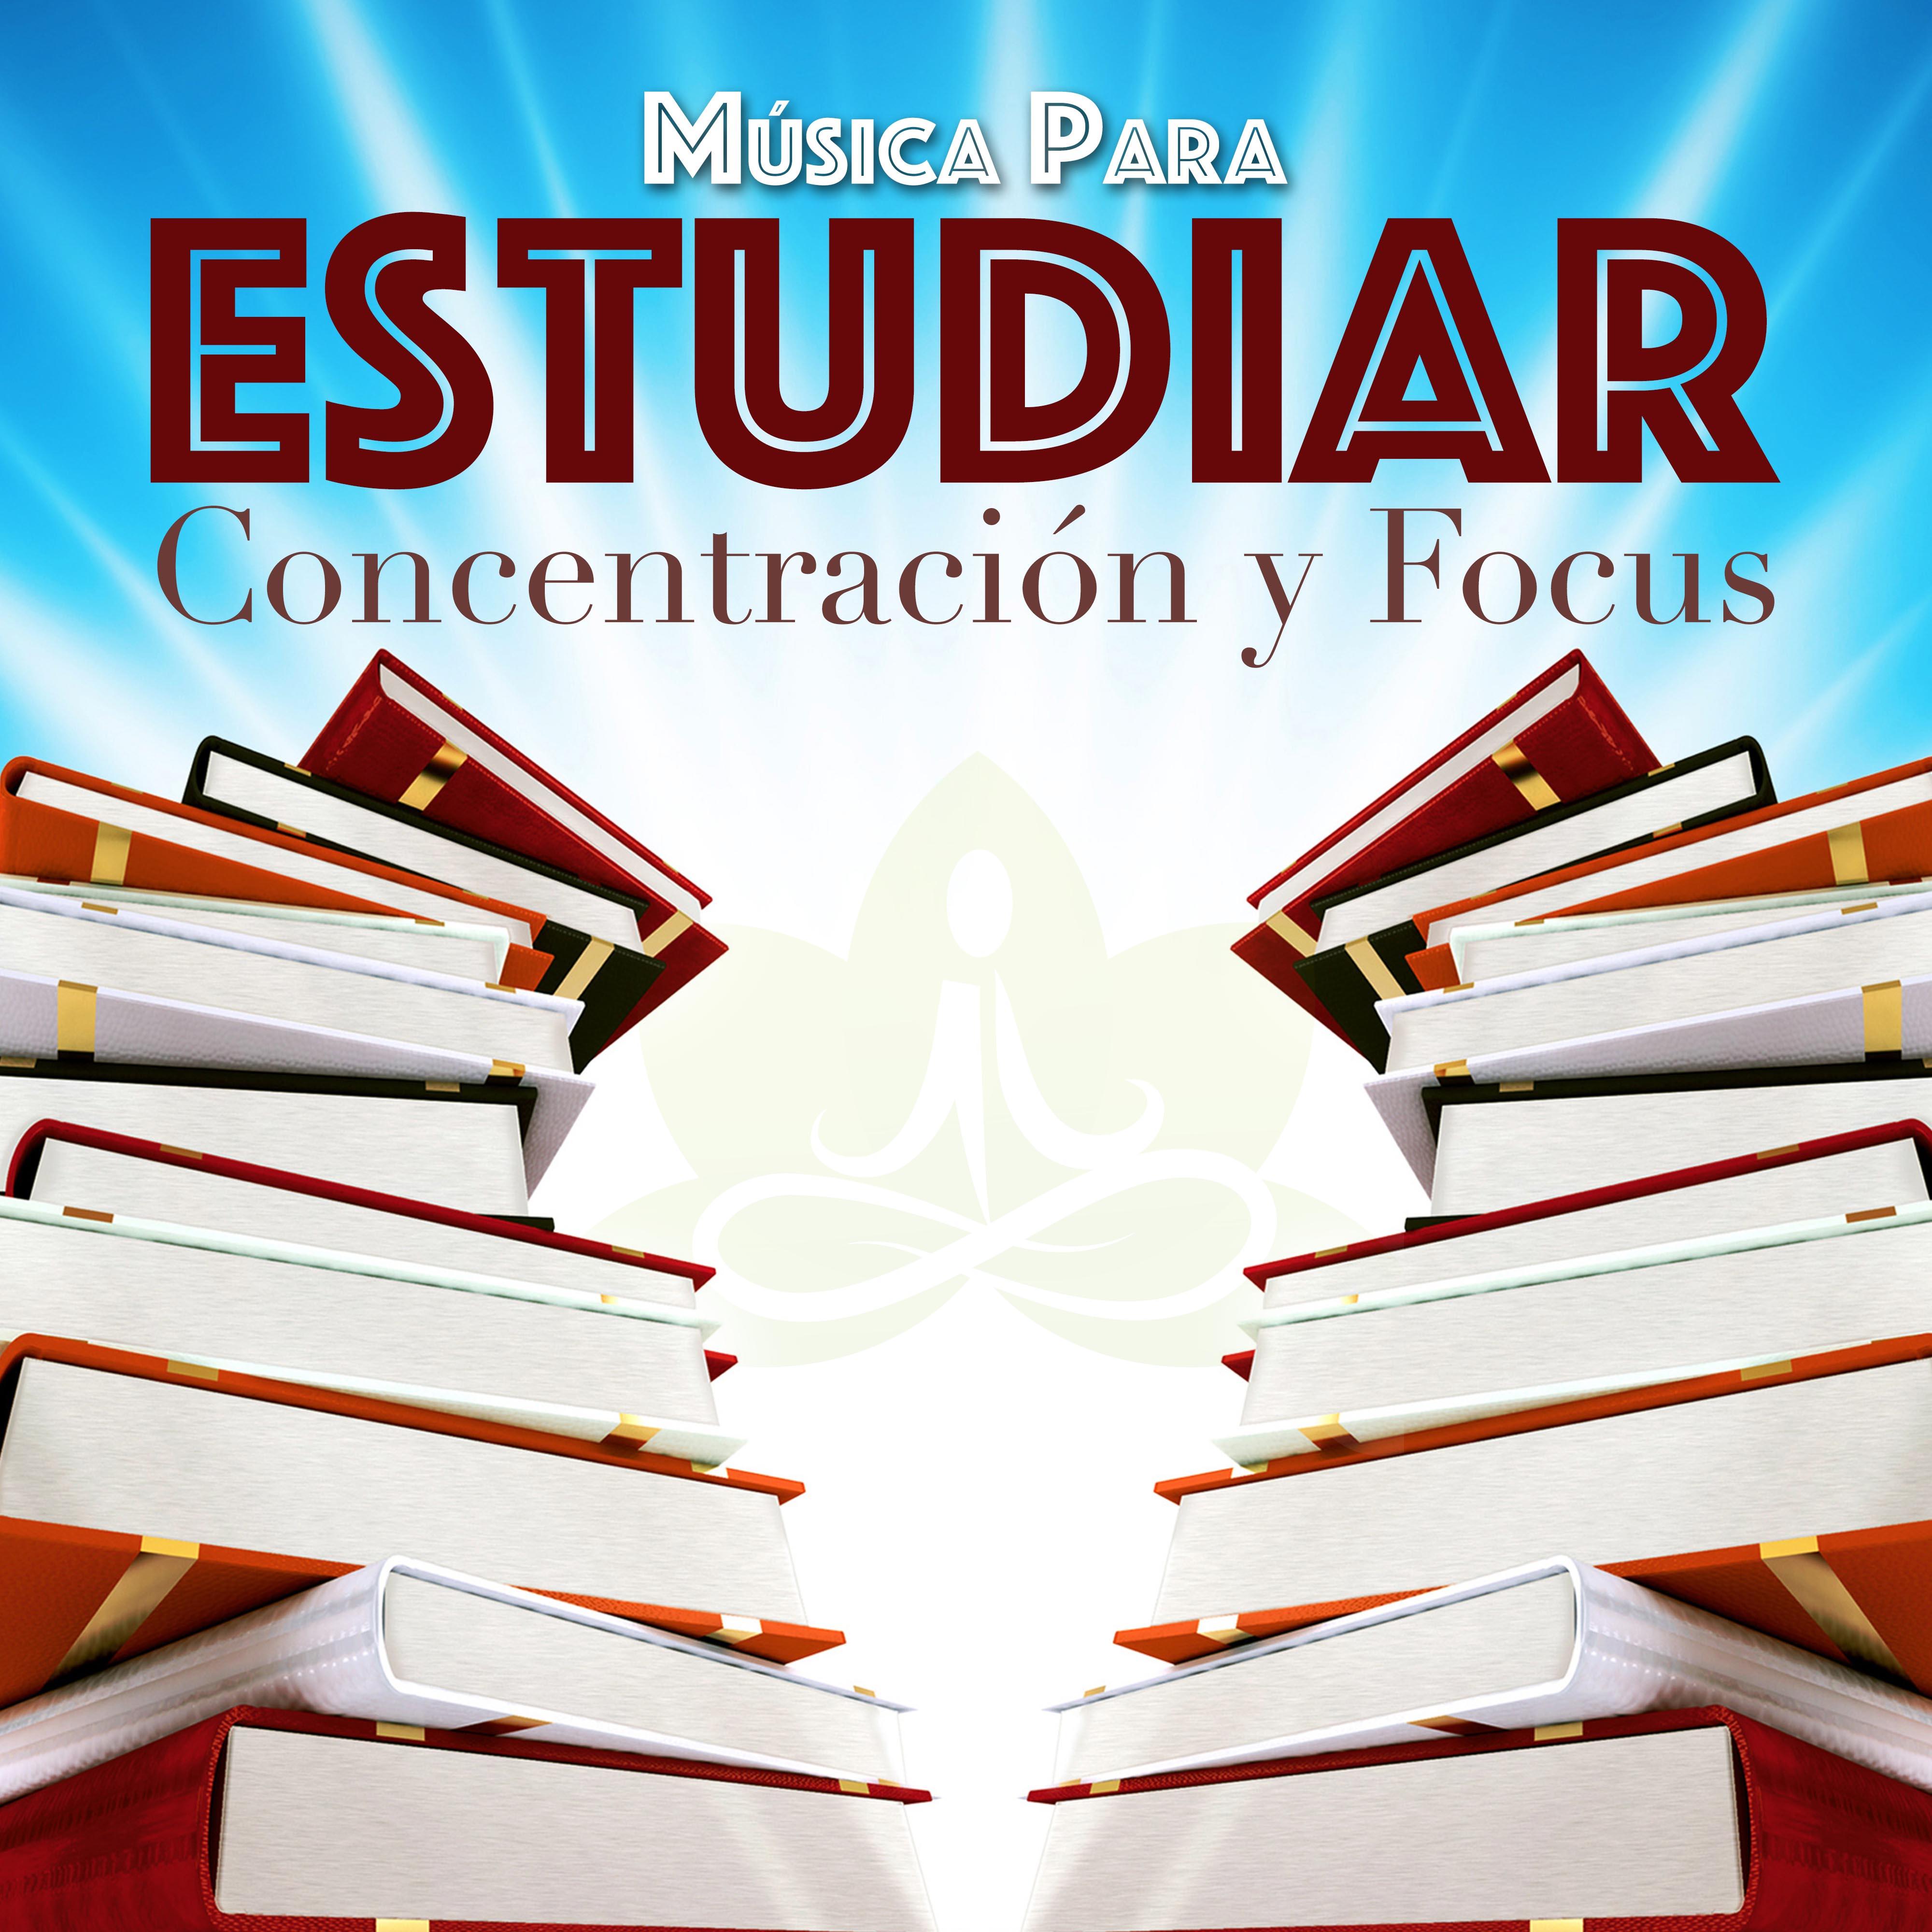 Música para Estudiar y Musica Relajante para Trabajar - Concentración y Focus para Leer, Trabajar y Memorizar Rápido